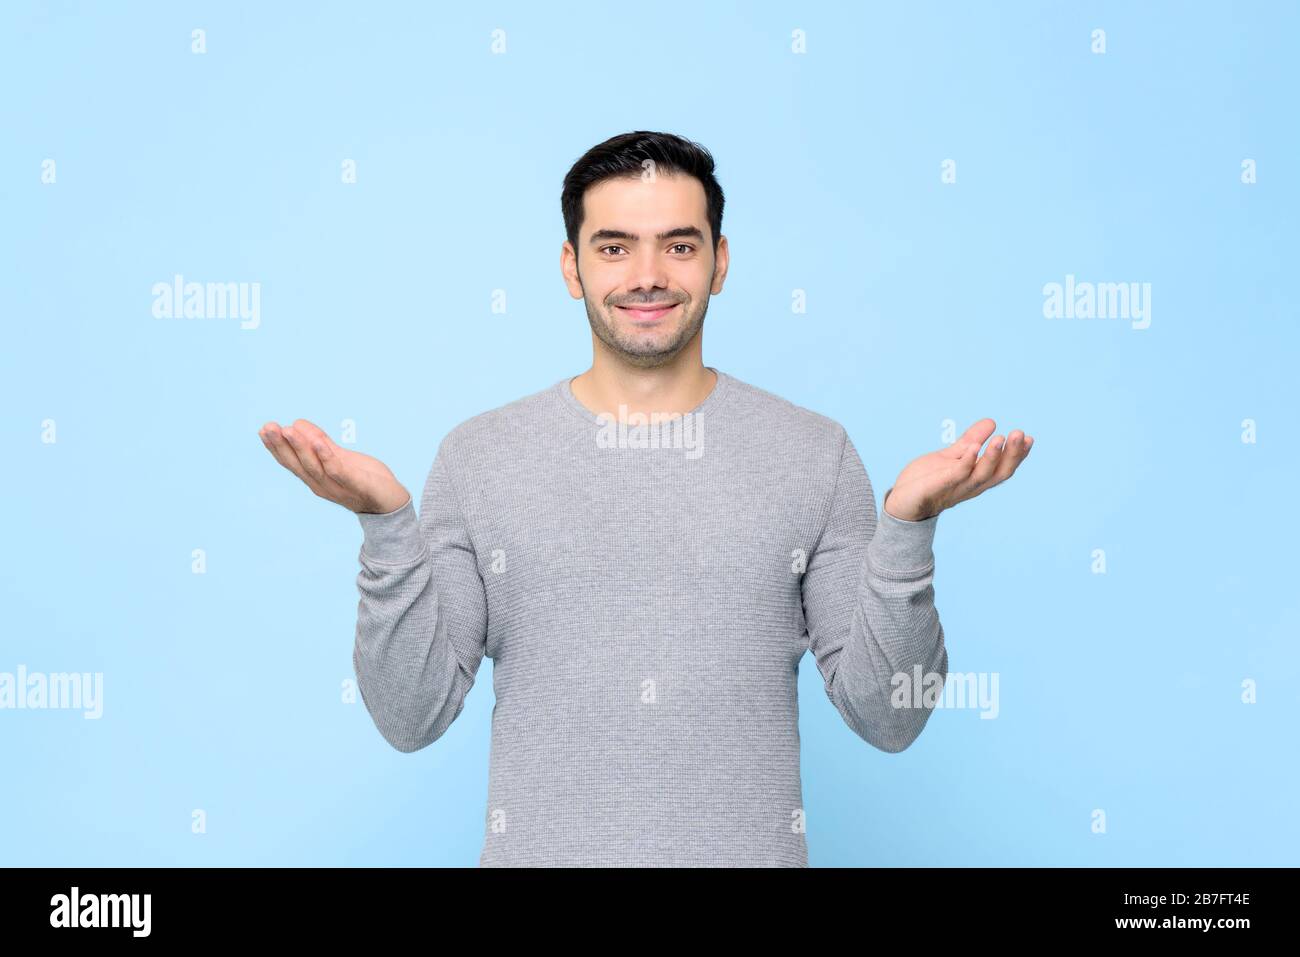 Halbkörperporträt lächelnder Mann in grauem T-Shirt mit offener Geste im hellblauen Studiohintergrund Stockfoto